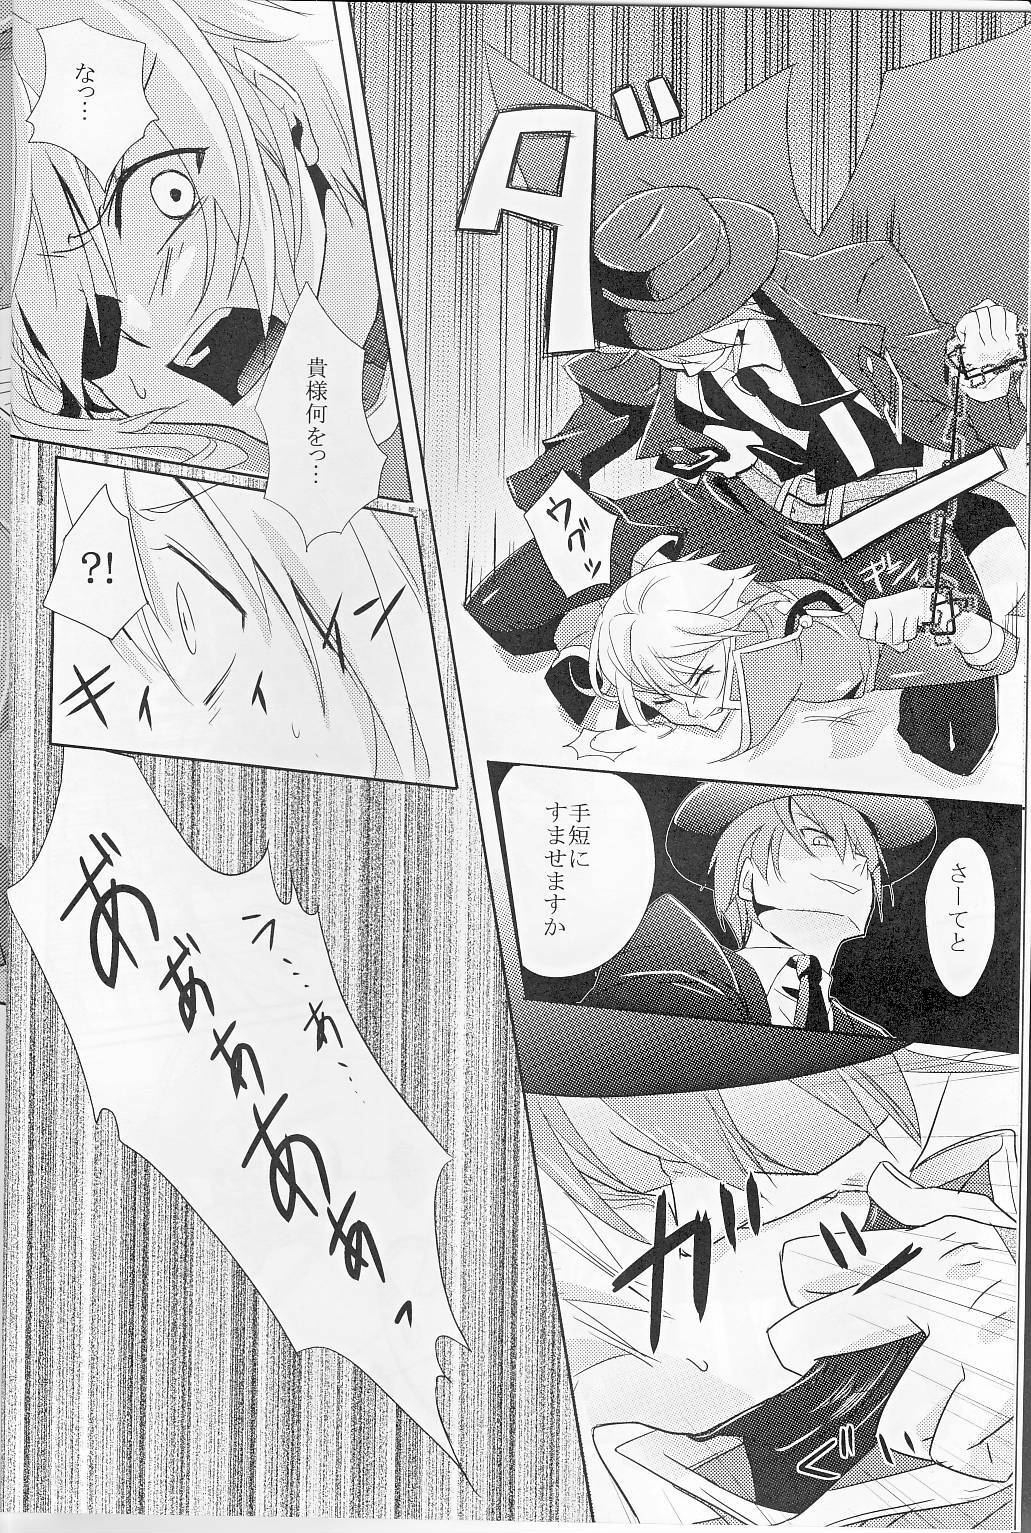 [smat. (Akatsuki Tomato)] Silly (BLAZBLUE) page 7 full